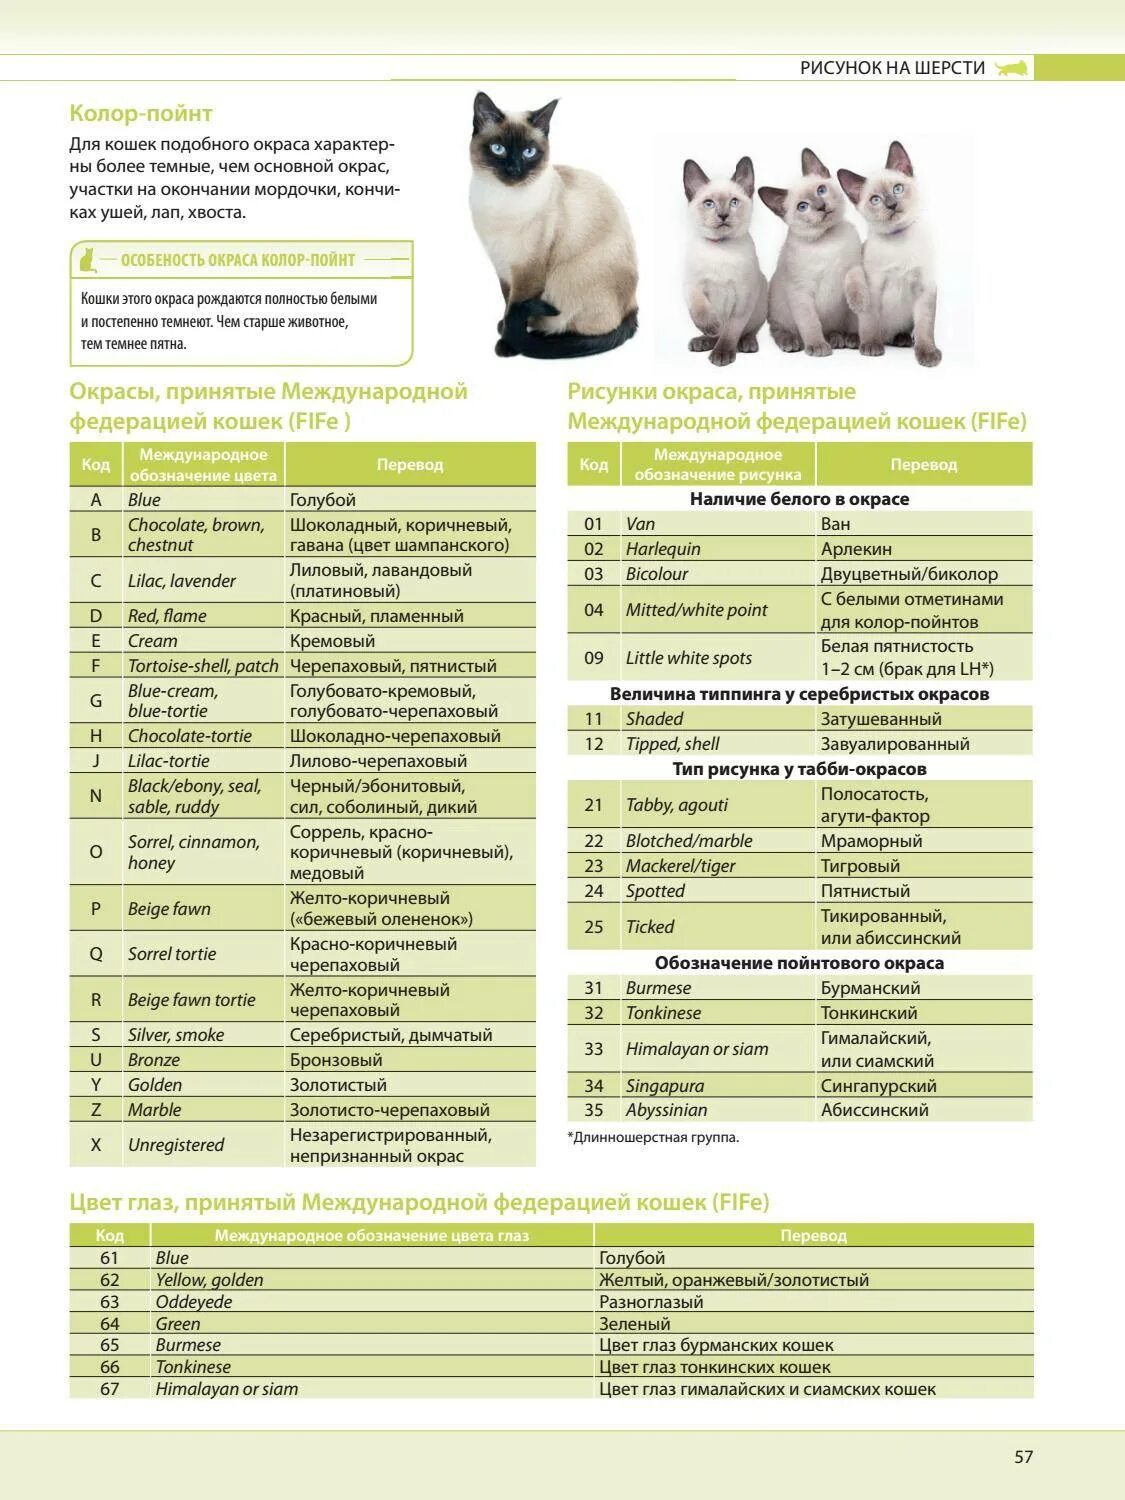 Таблица окрасов кошек WCF. Таблица генетики окрасов шотландских кошек. Классификация окраса шотландских кошек. Окрас и Тип шерсти кошек. Типы окрасов кошек